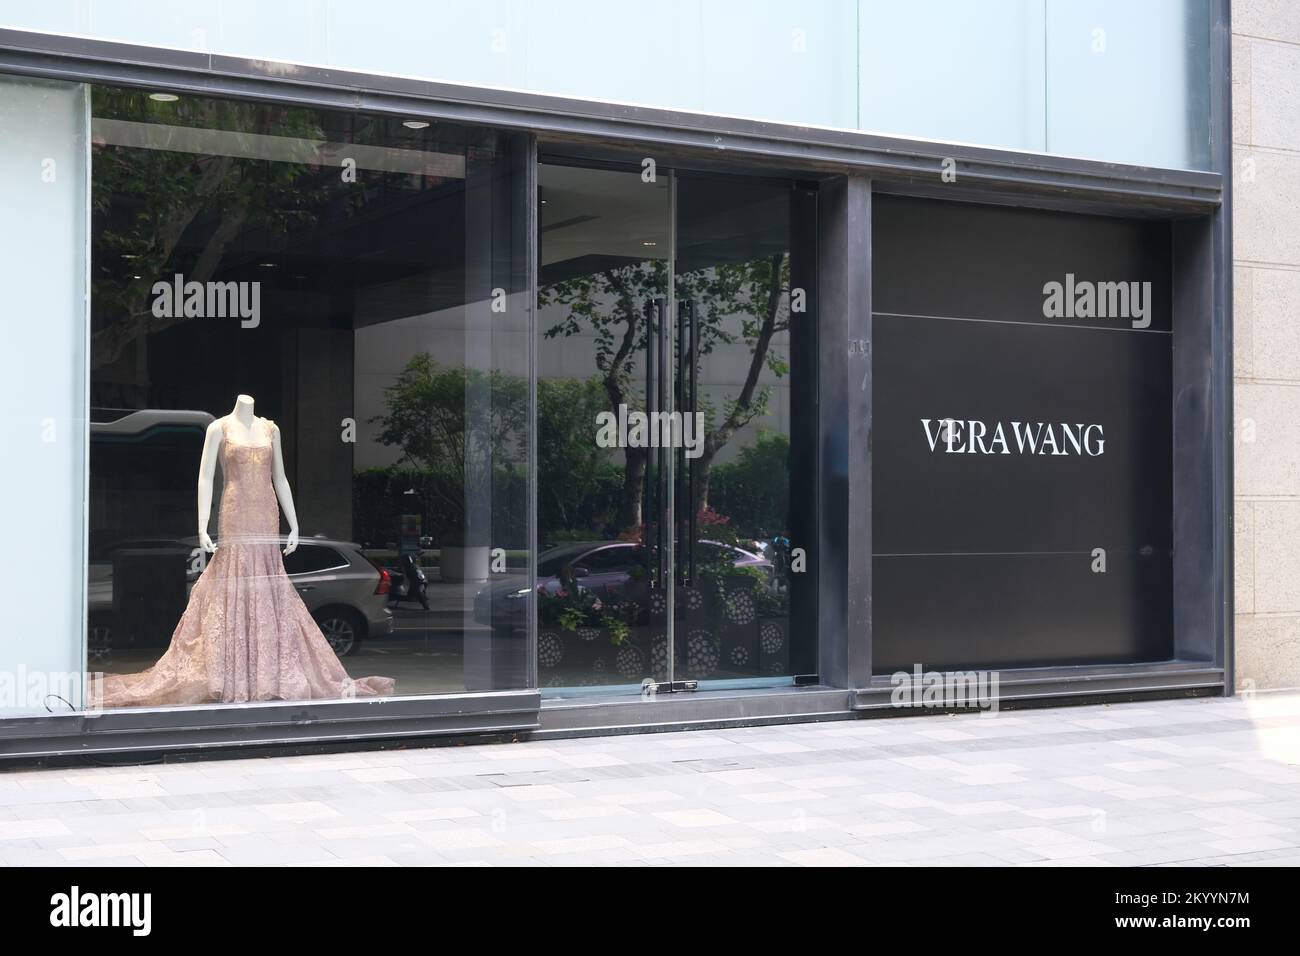 Vera wang boutique Banque de photographies et d'images à haute résolution -  Alamy